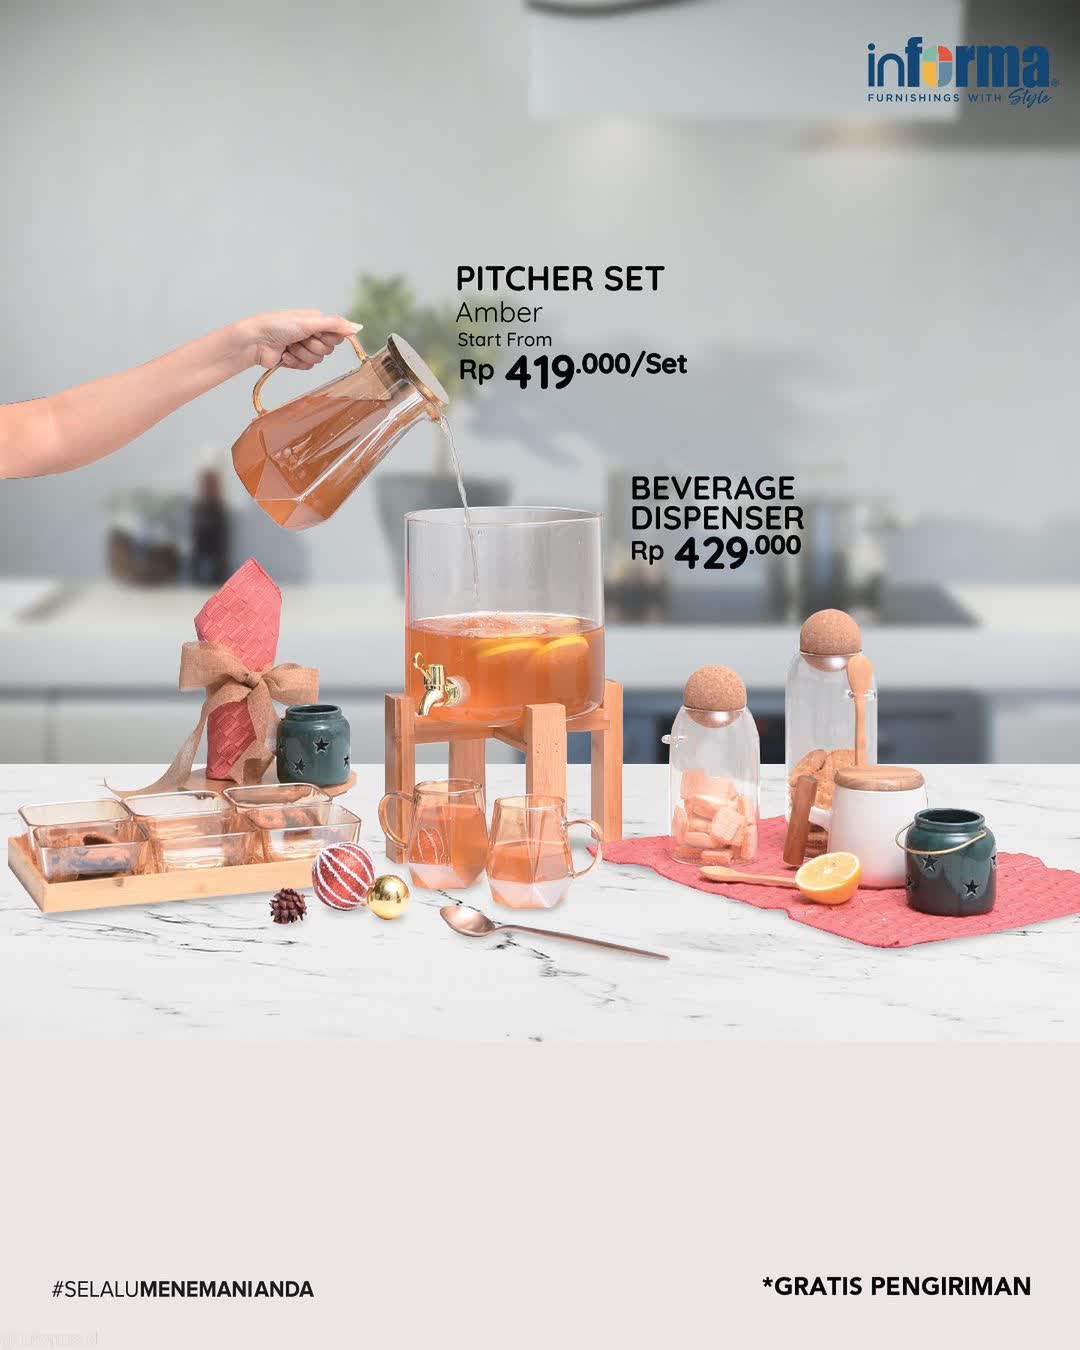  Pitcher Set & Beverage Dispenser Promo at Informa December 2021